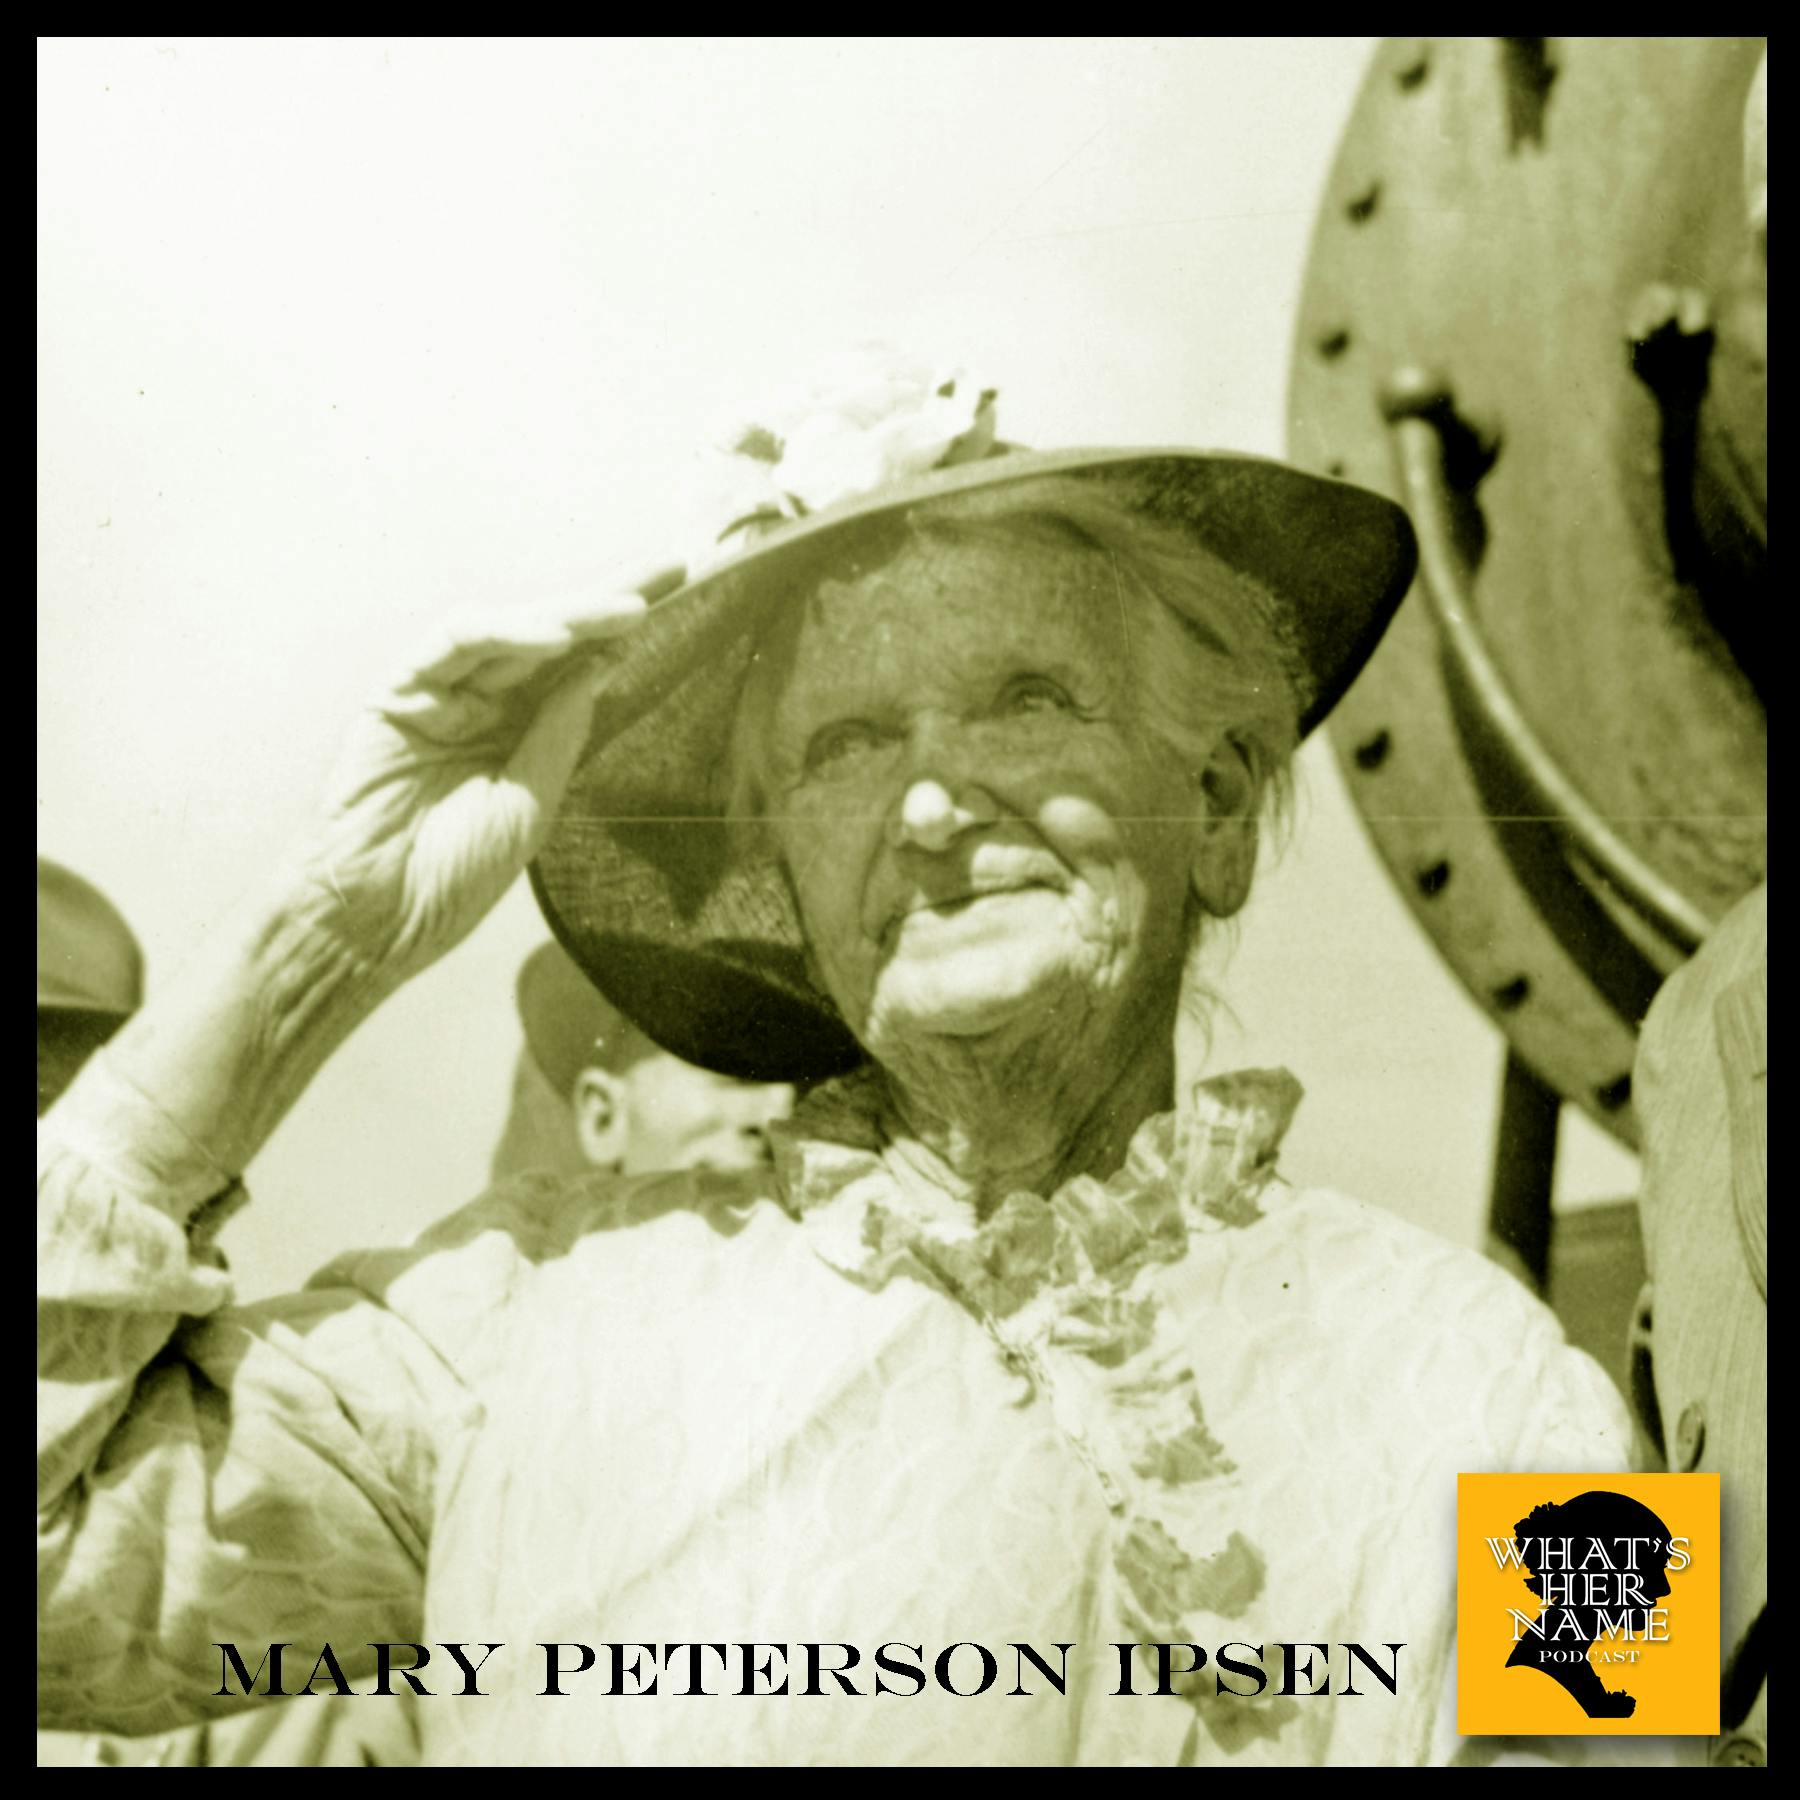 THE GIRL OF IRON Mary Peterson Ipsen